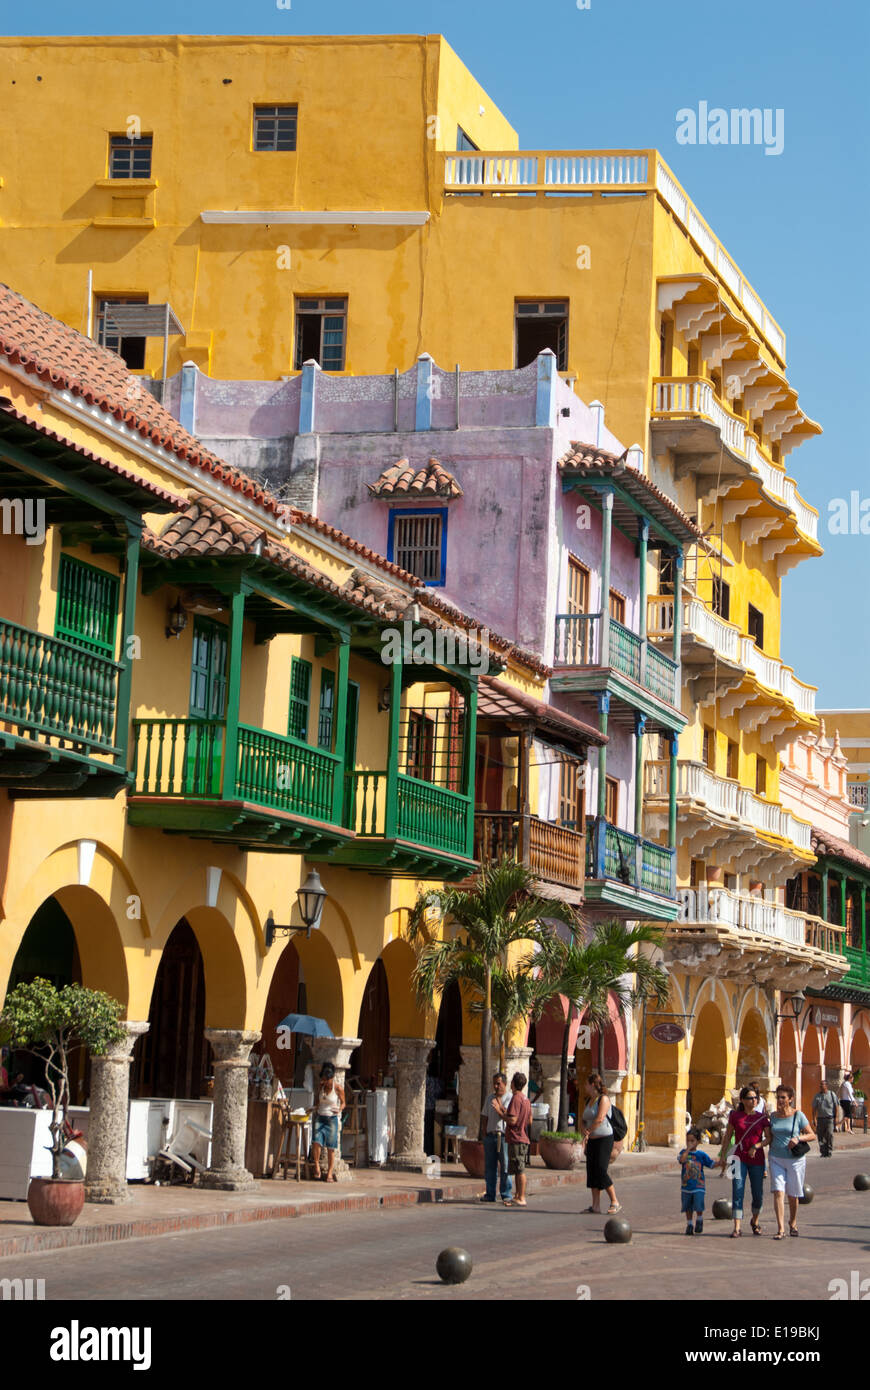 Houses on Plaza de los Coches, Cartagena de Indias, Colombia Stock Photo